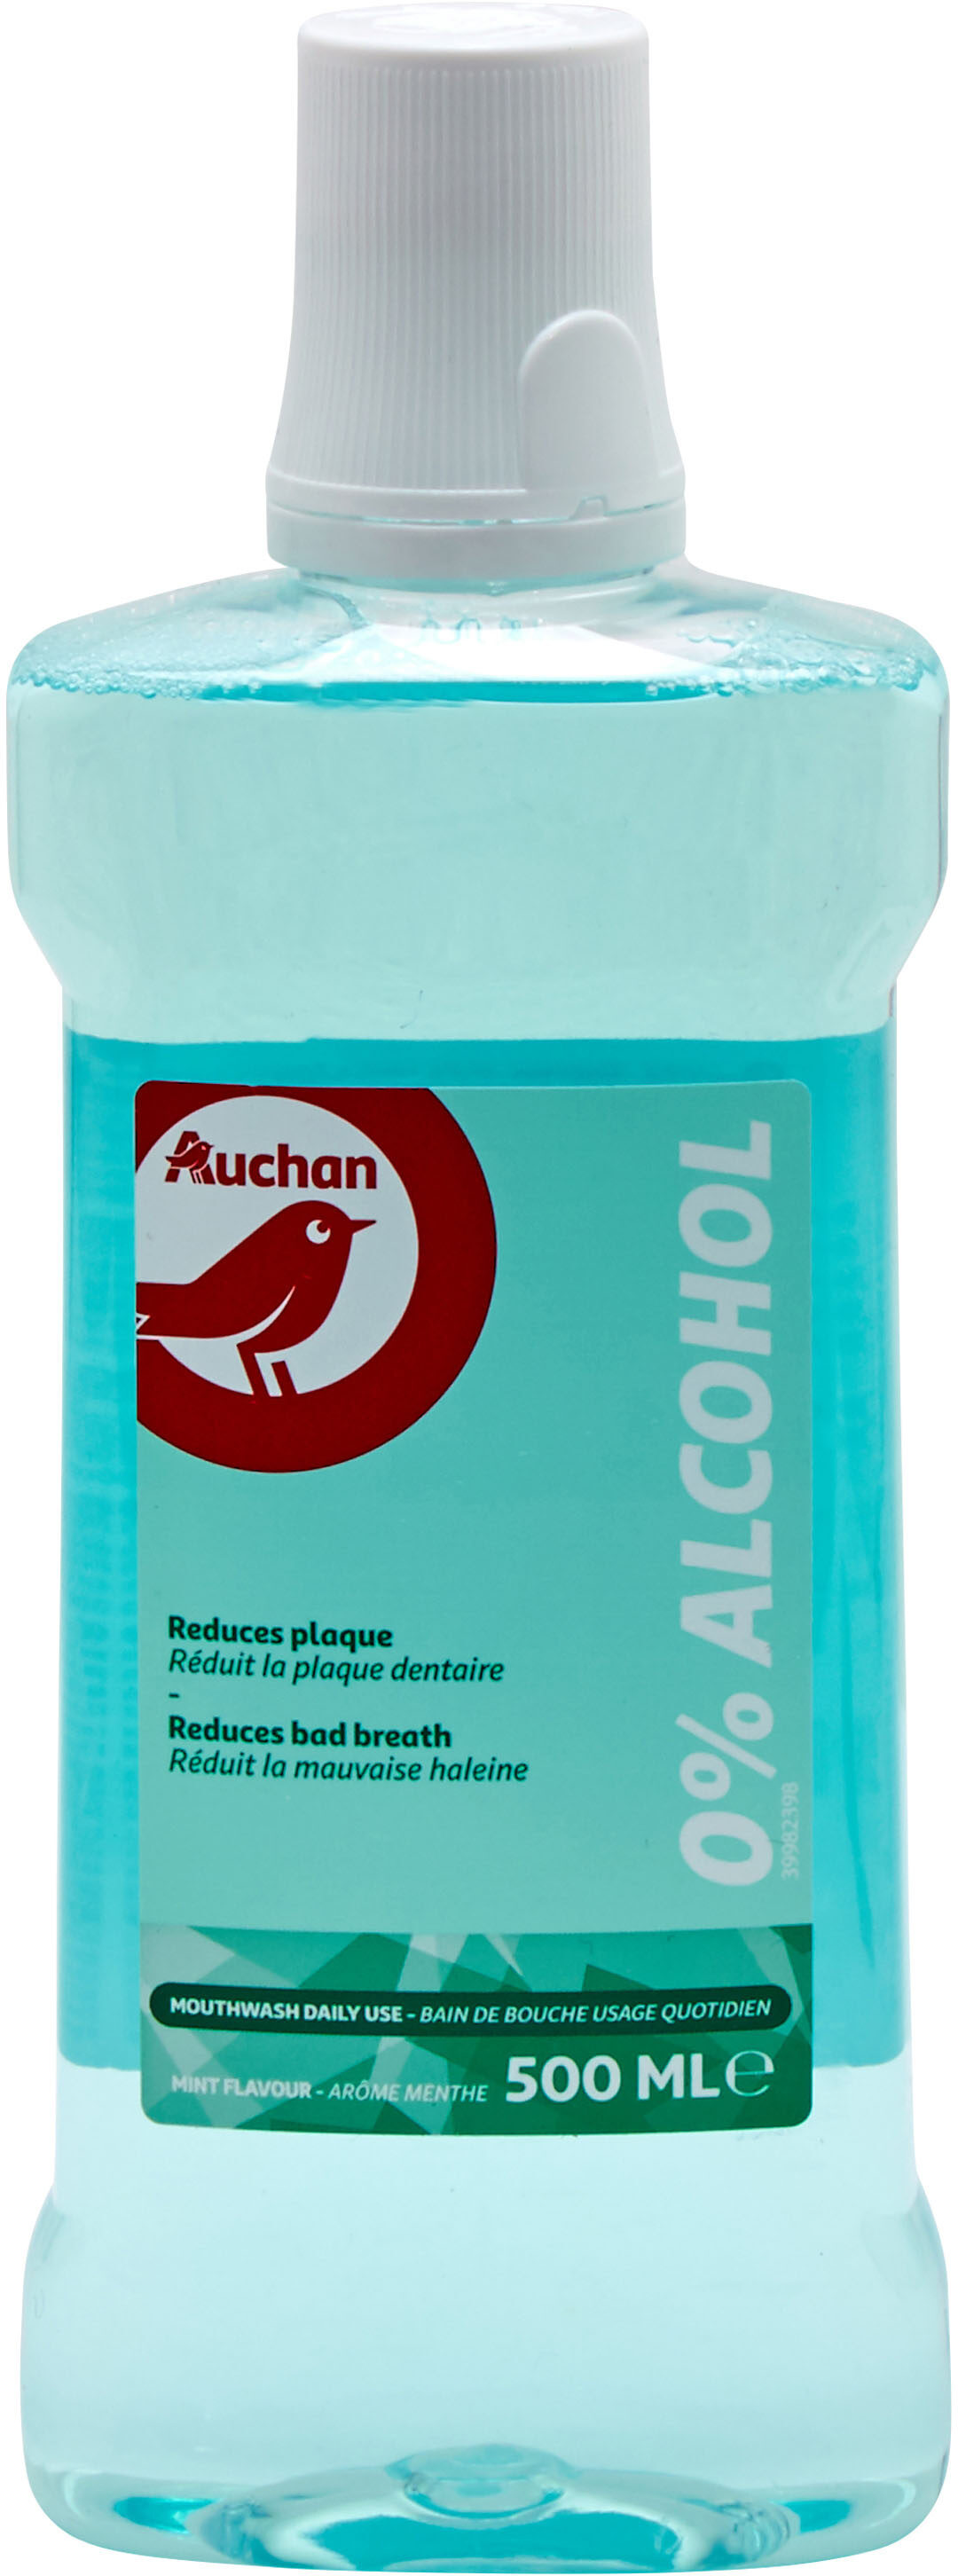 Auchan - bain de bouche - fraicheur 0% alcool - 500ml - Produto - fr